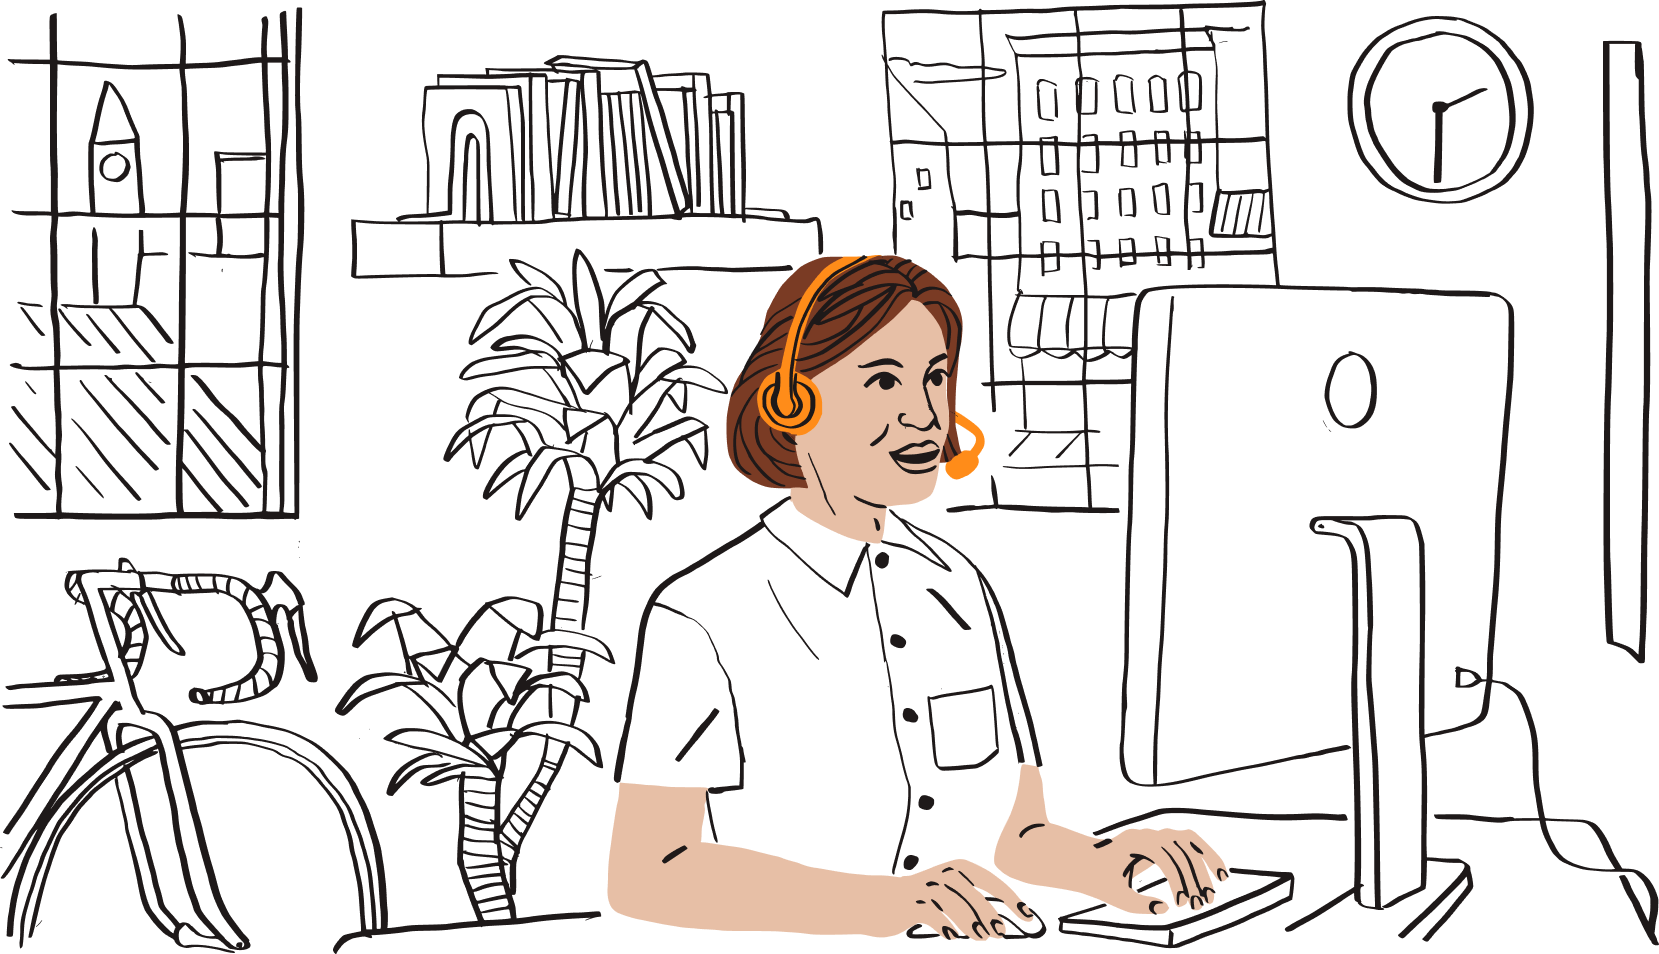 Eine Illustration eines Vertriebsmitarbeiters, der vor einem Computermonitor sitzt und über ein Headset kommuniziert